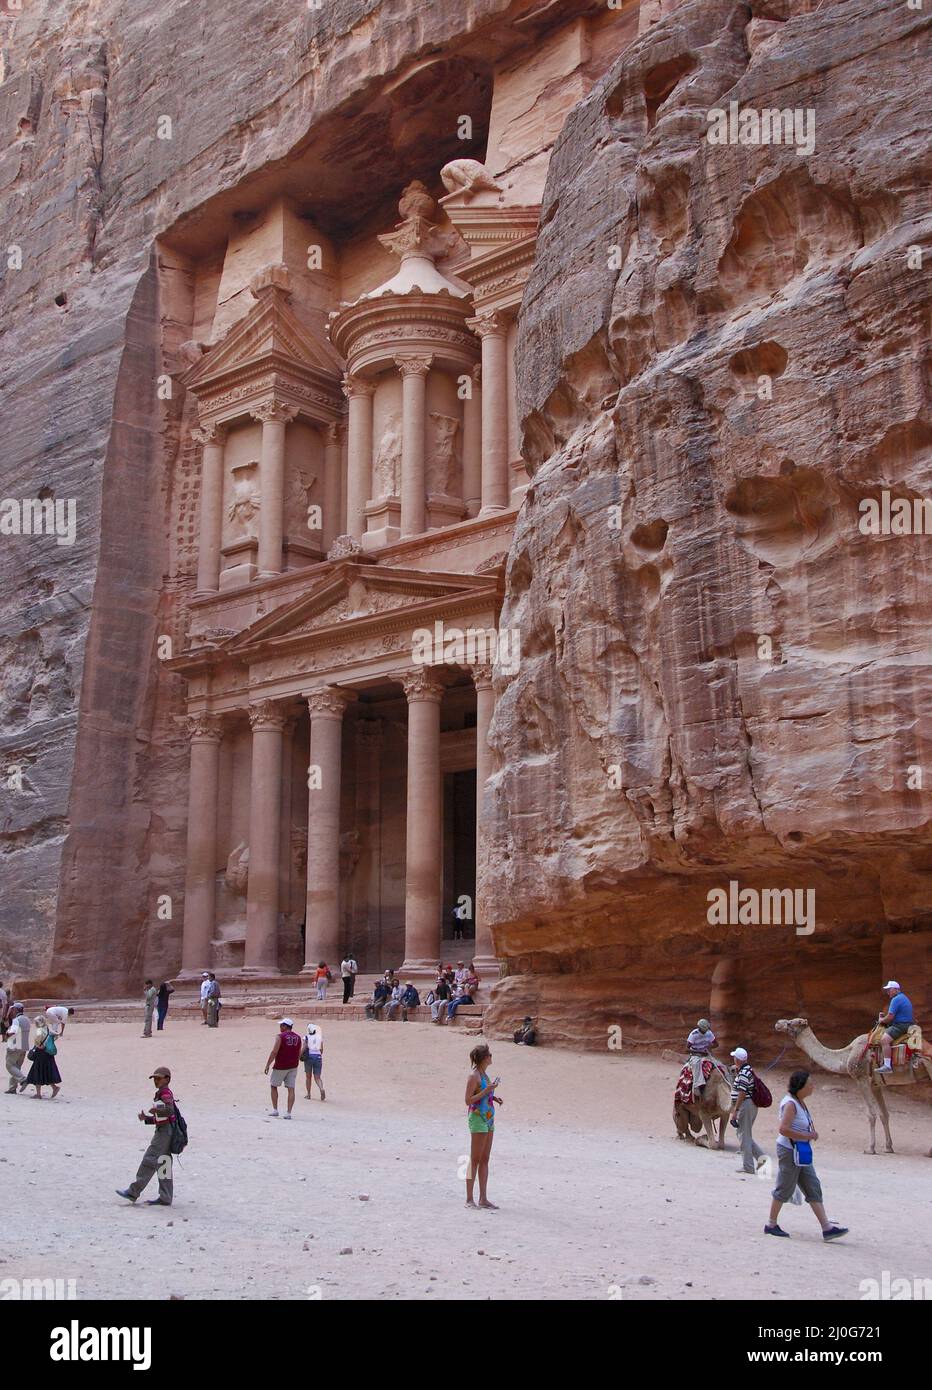 Turisti al monumento del tesoro di petra sito archeologico in Giordania, Asia Foto Stock